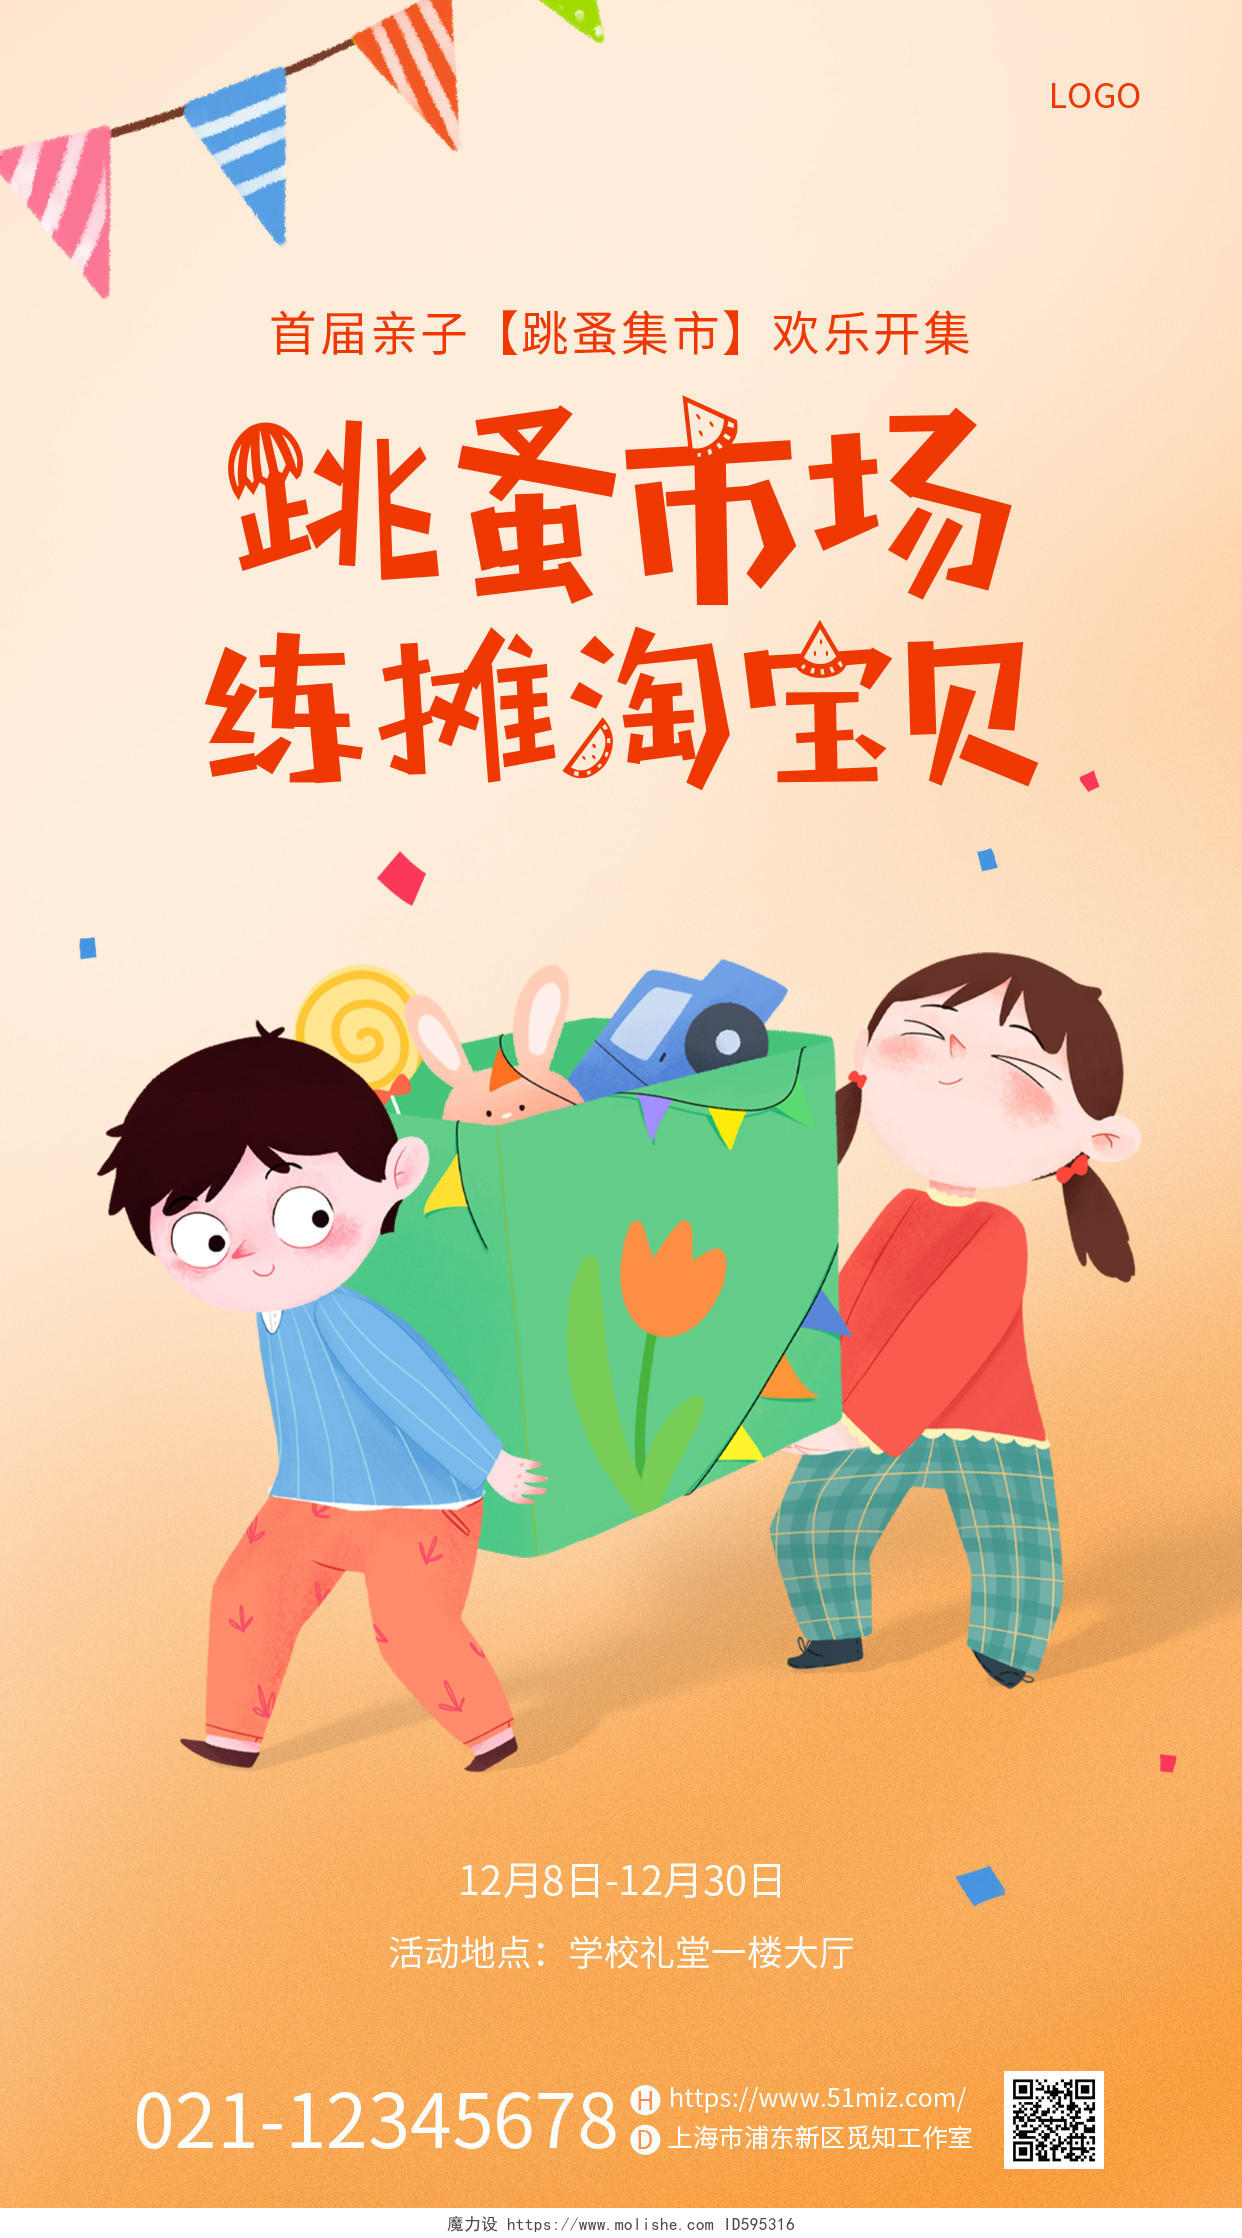 橙色可爱插画儿童跳蚤市场交换物品手机宣传海报